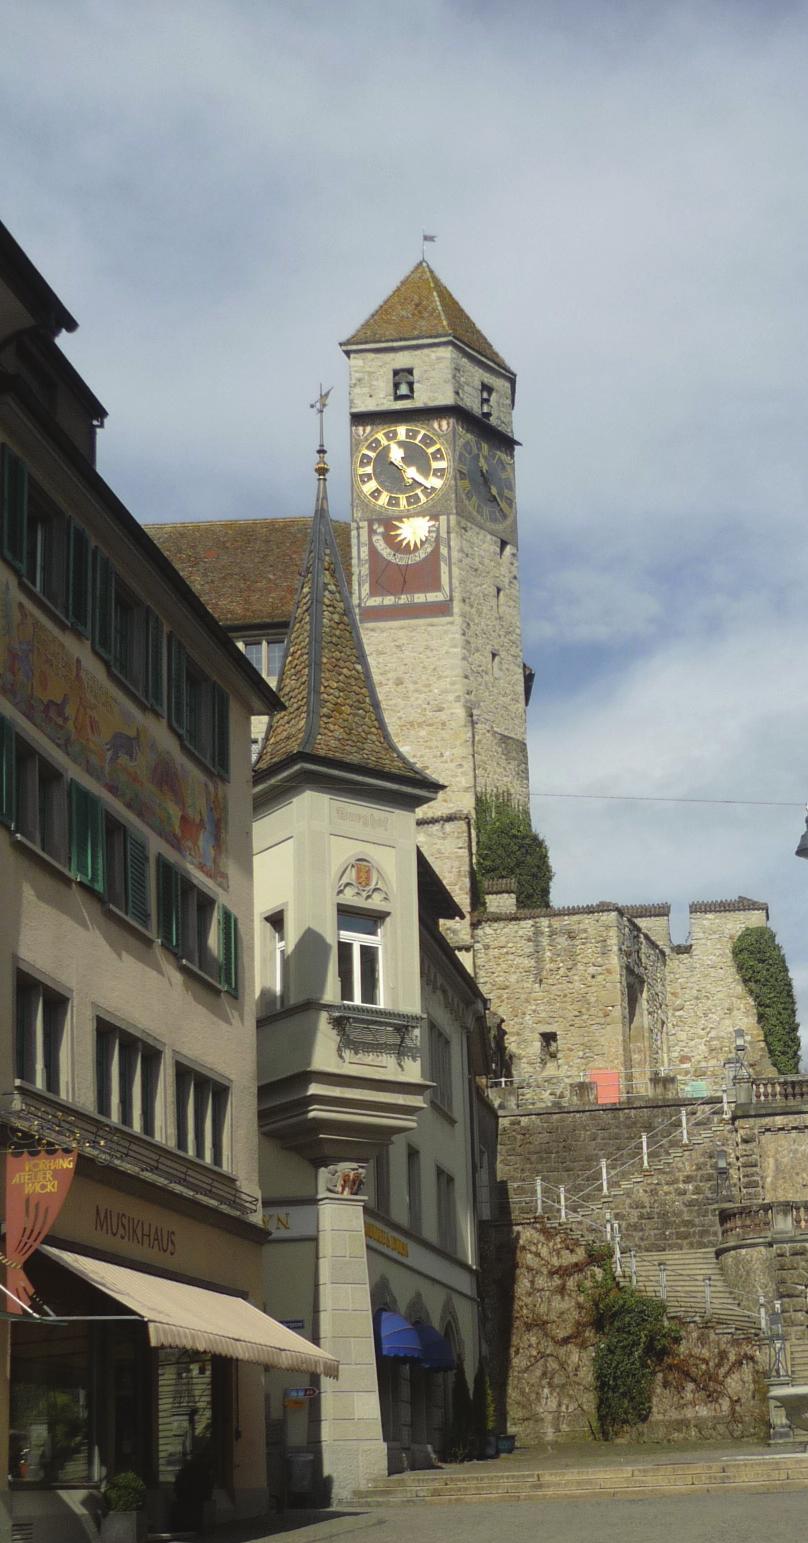 bezeichnen darf. Die Burg Rapperswil hat eine Burg, welche in den Jahren 1220 bis 1230 von Vogt Rudolf von Rapperswil auf dem höchsten Punkt der Stadt erbaut wurde und über der Altstadt thront.